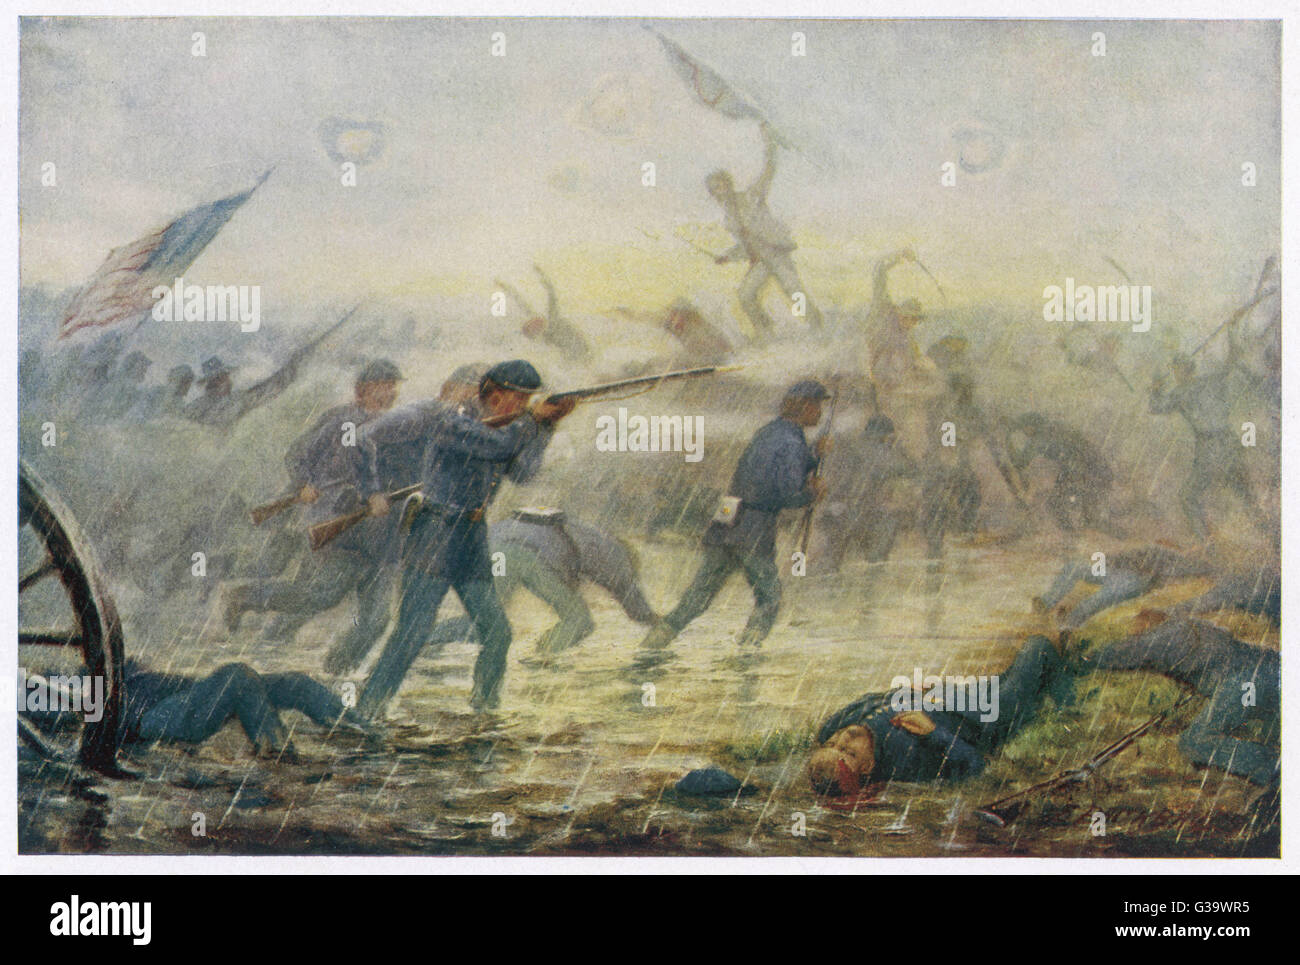 Eine Fortsetzung der Schlacht in der Wilderness, die Konföderierten unter General Lee Grant angegriffen.  Beide Armeen in ihren ursprünglichen Positionen mit schweren Verlusten endete.     Datum: 10.-12. Mai 1864 Stockfoto